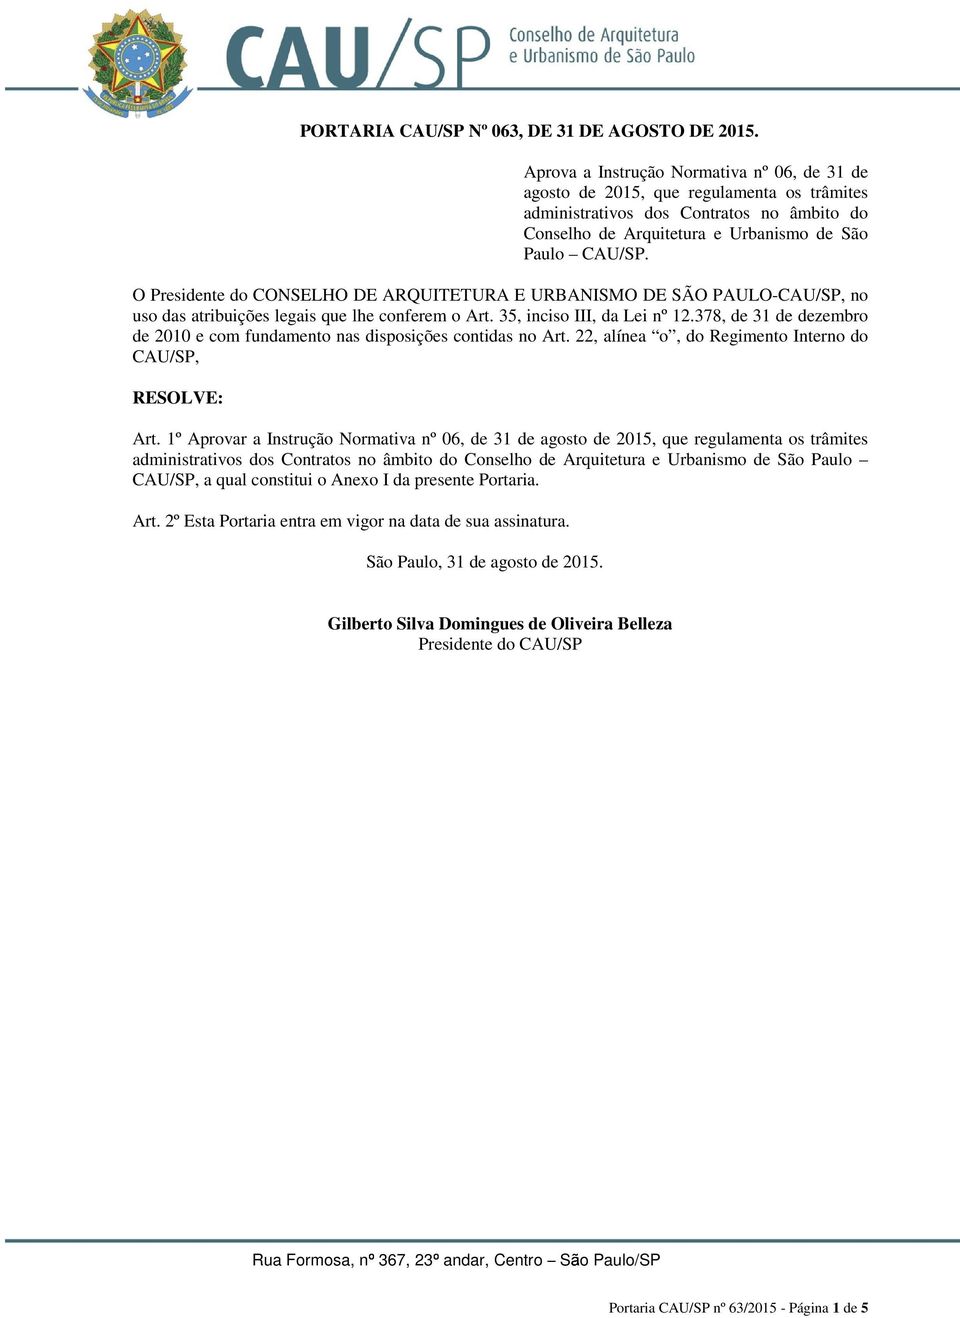 O Presidente do CONSELHO DE ARQUITETURA E URBANISMO DE SÃO PAULO-CAU/SP, no uso das atribuições legais que lhe conferem o Art. 35, inciso III, da Lei nº 12.